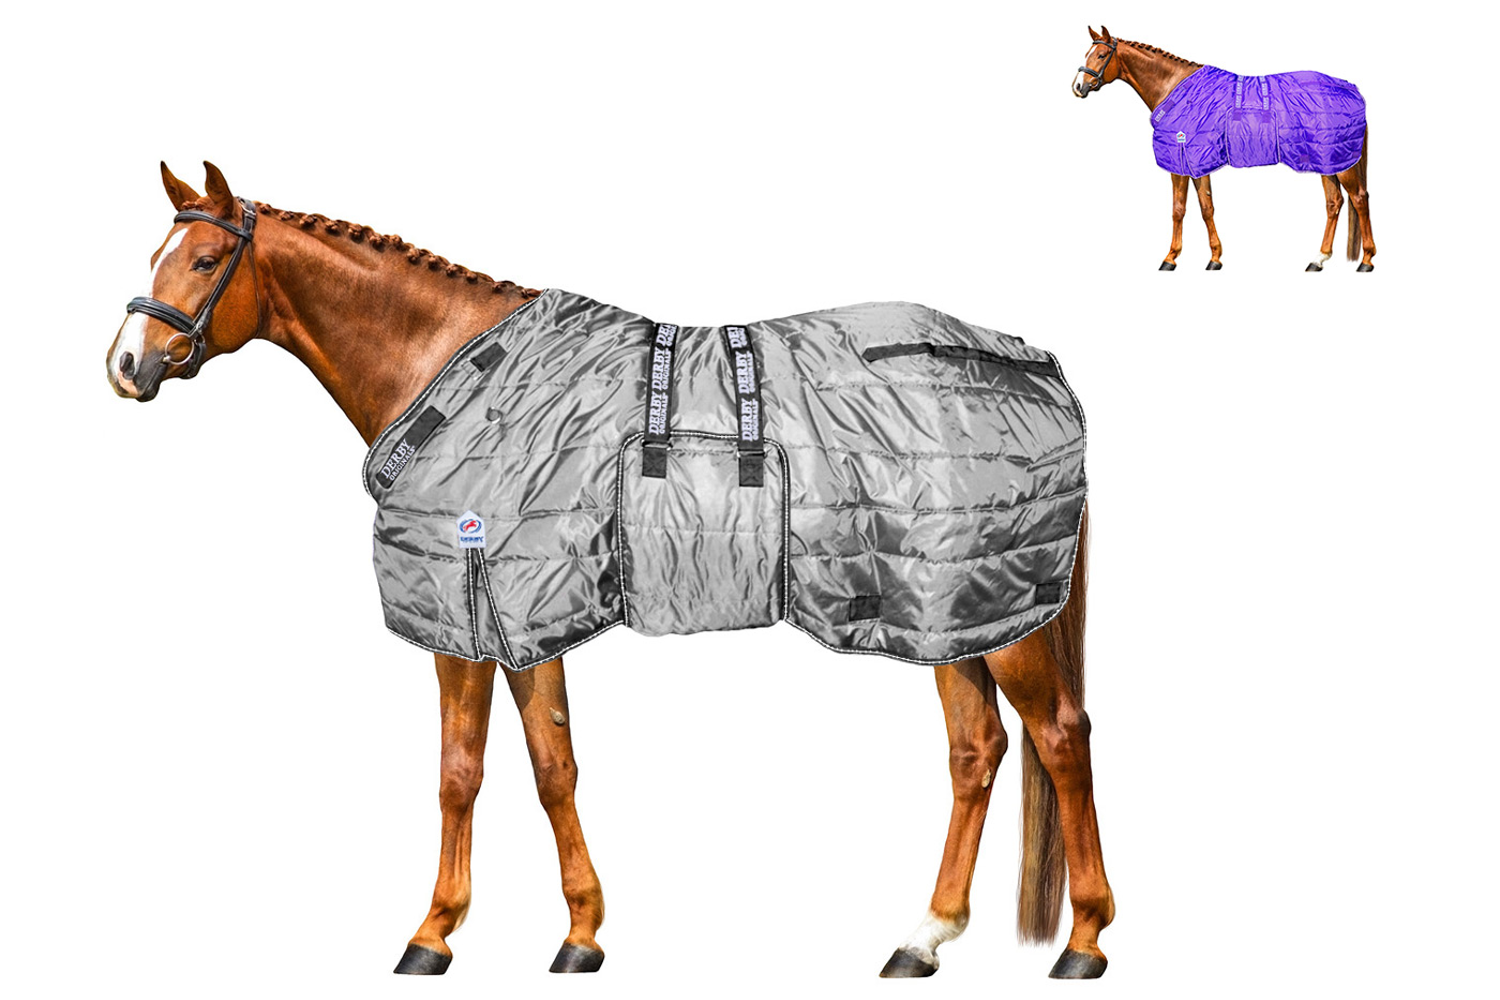 https://www.derbyoriginals.com/cdn/shop/products/1Winter_Horse_Draft_Stable_Blanket_420D_Charcoal_Swatch_80-8074V2.png?v=1603308235